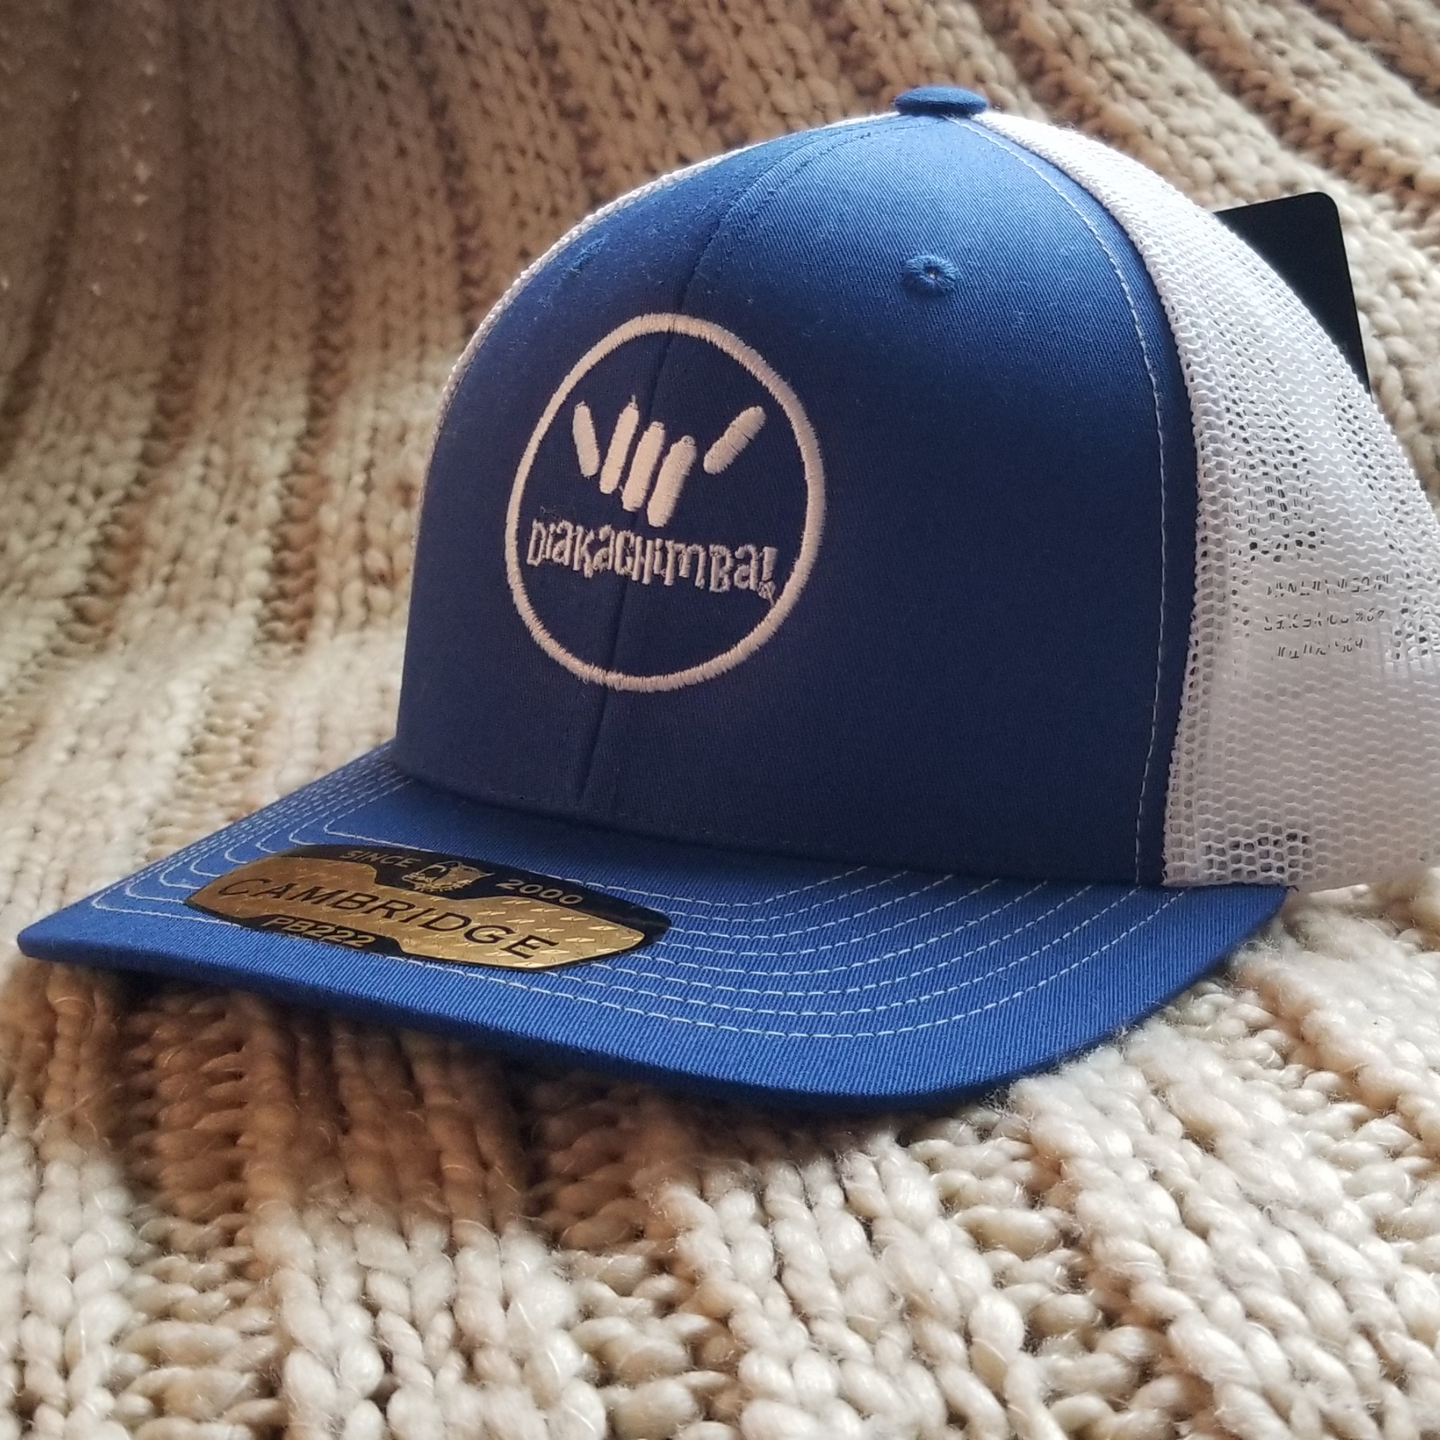 Diakachimba Trucker Hat - Snap-back (Blue & White)